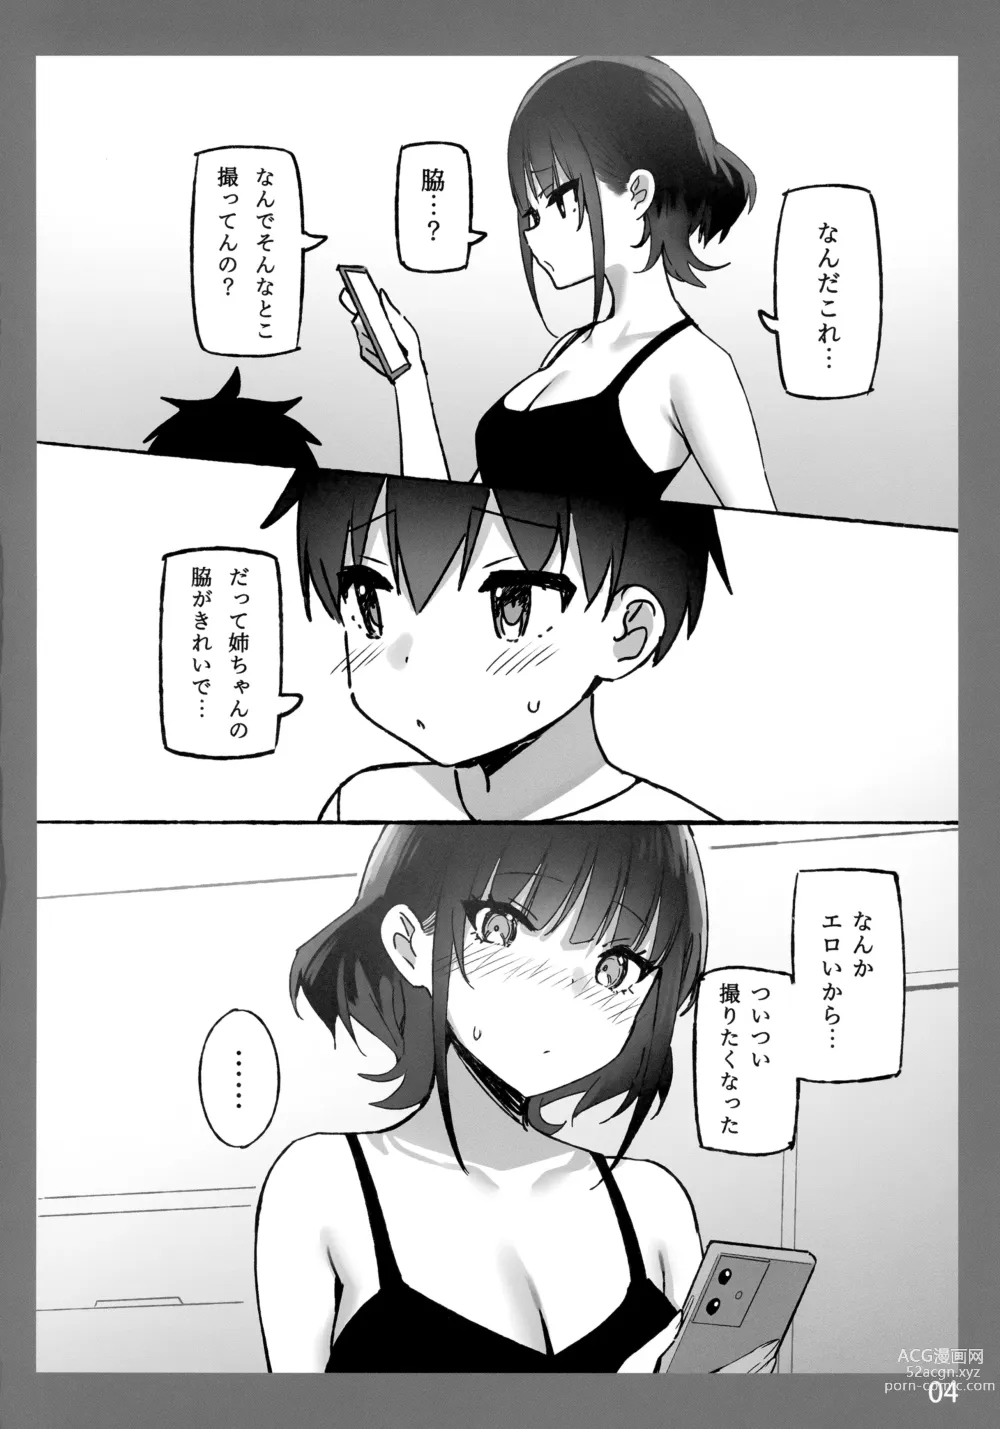 Page 4 of doujinshi Onee-chan to Torokeru Kimochi SP 2